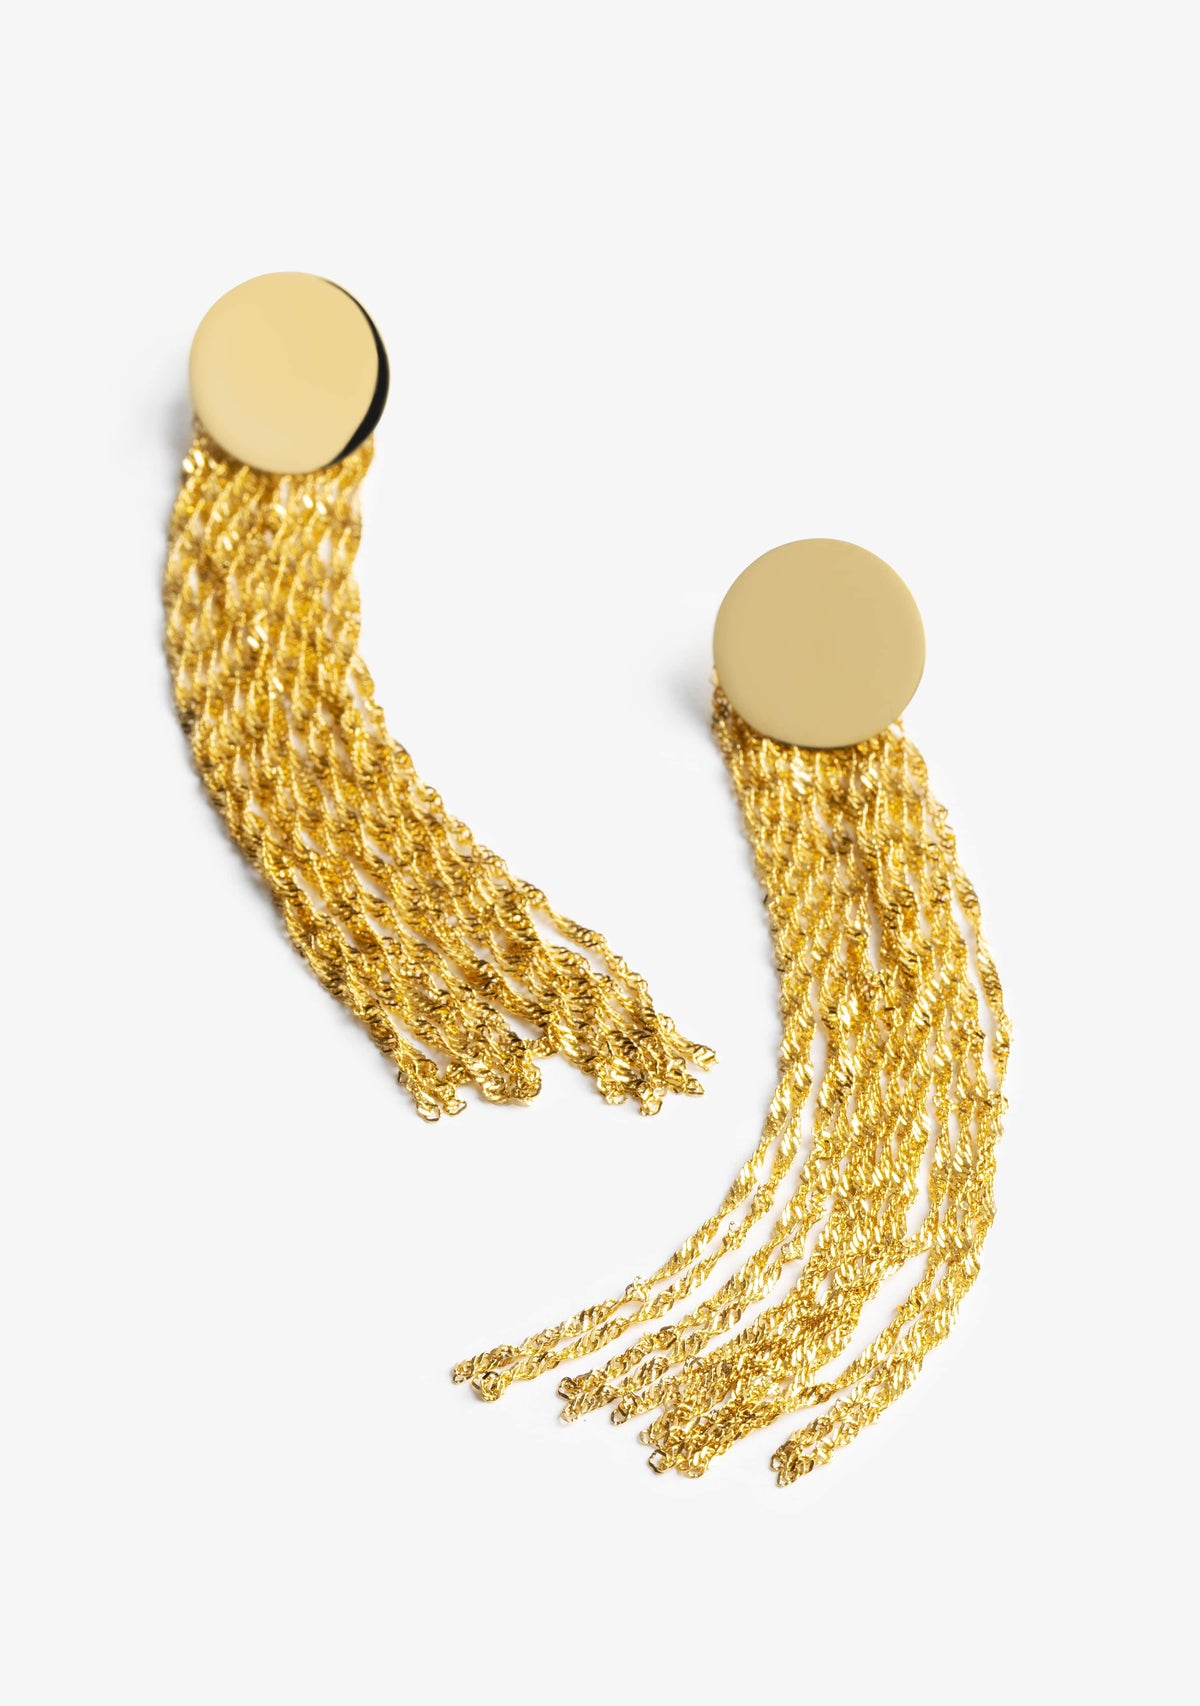 Maroon Earrings Gold